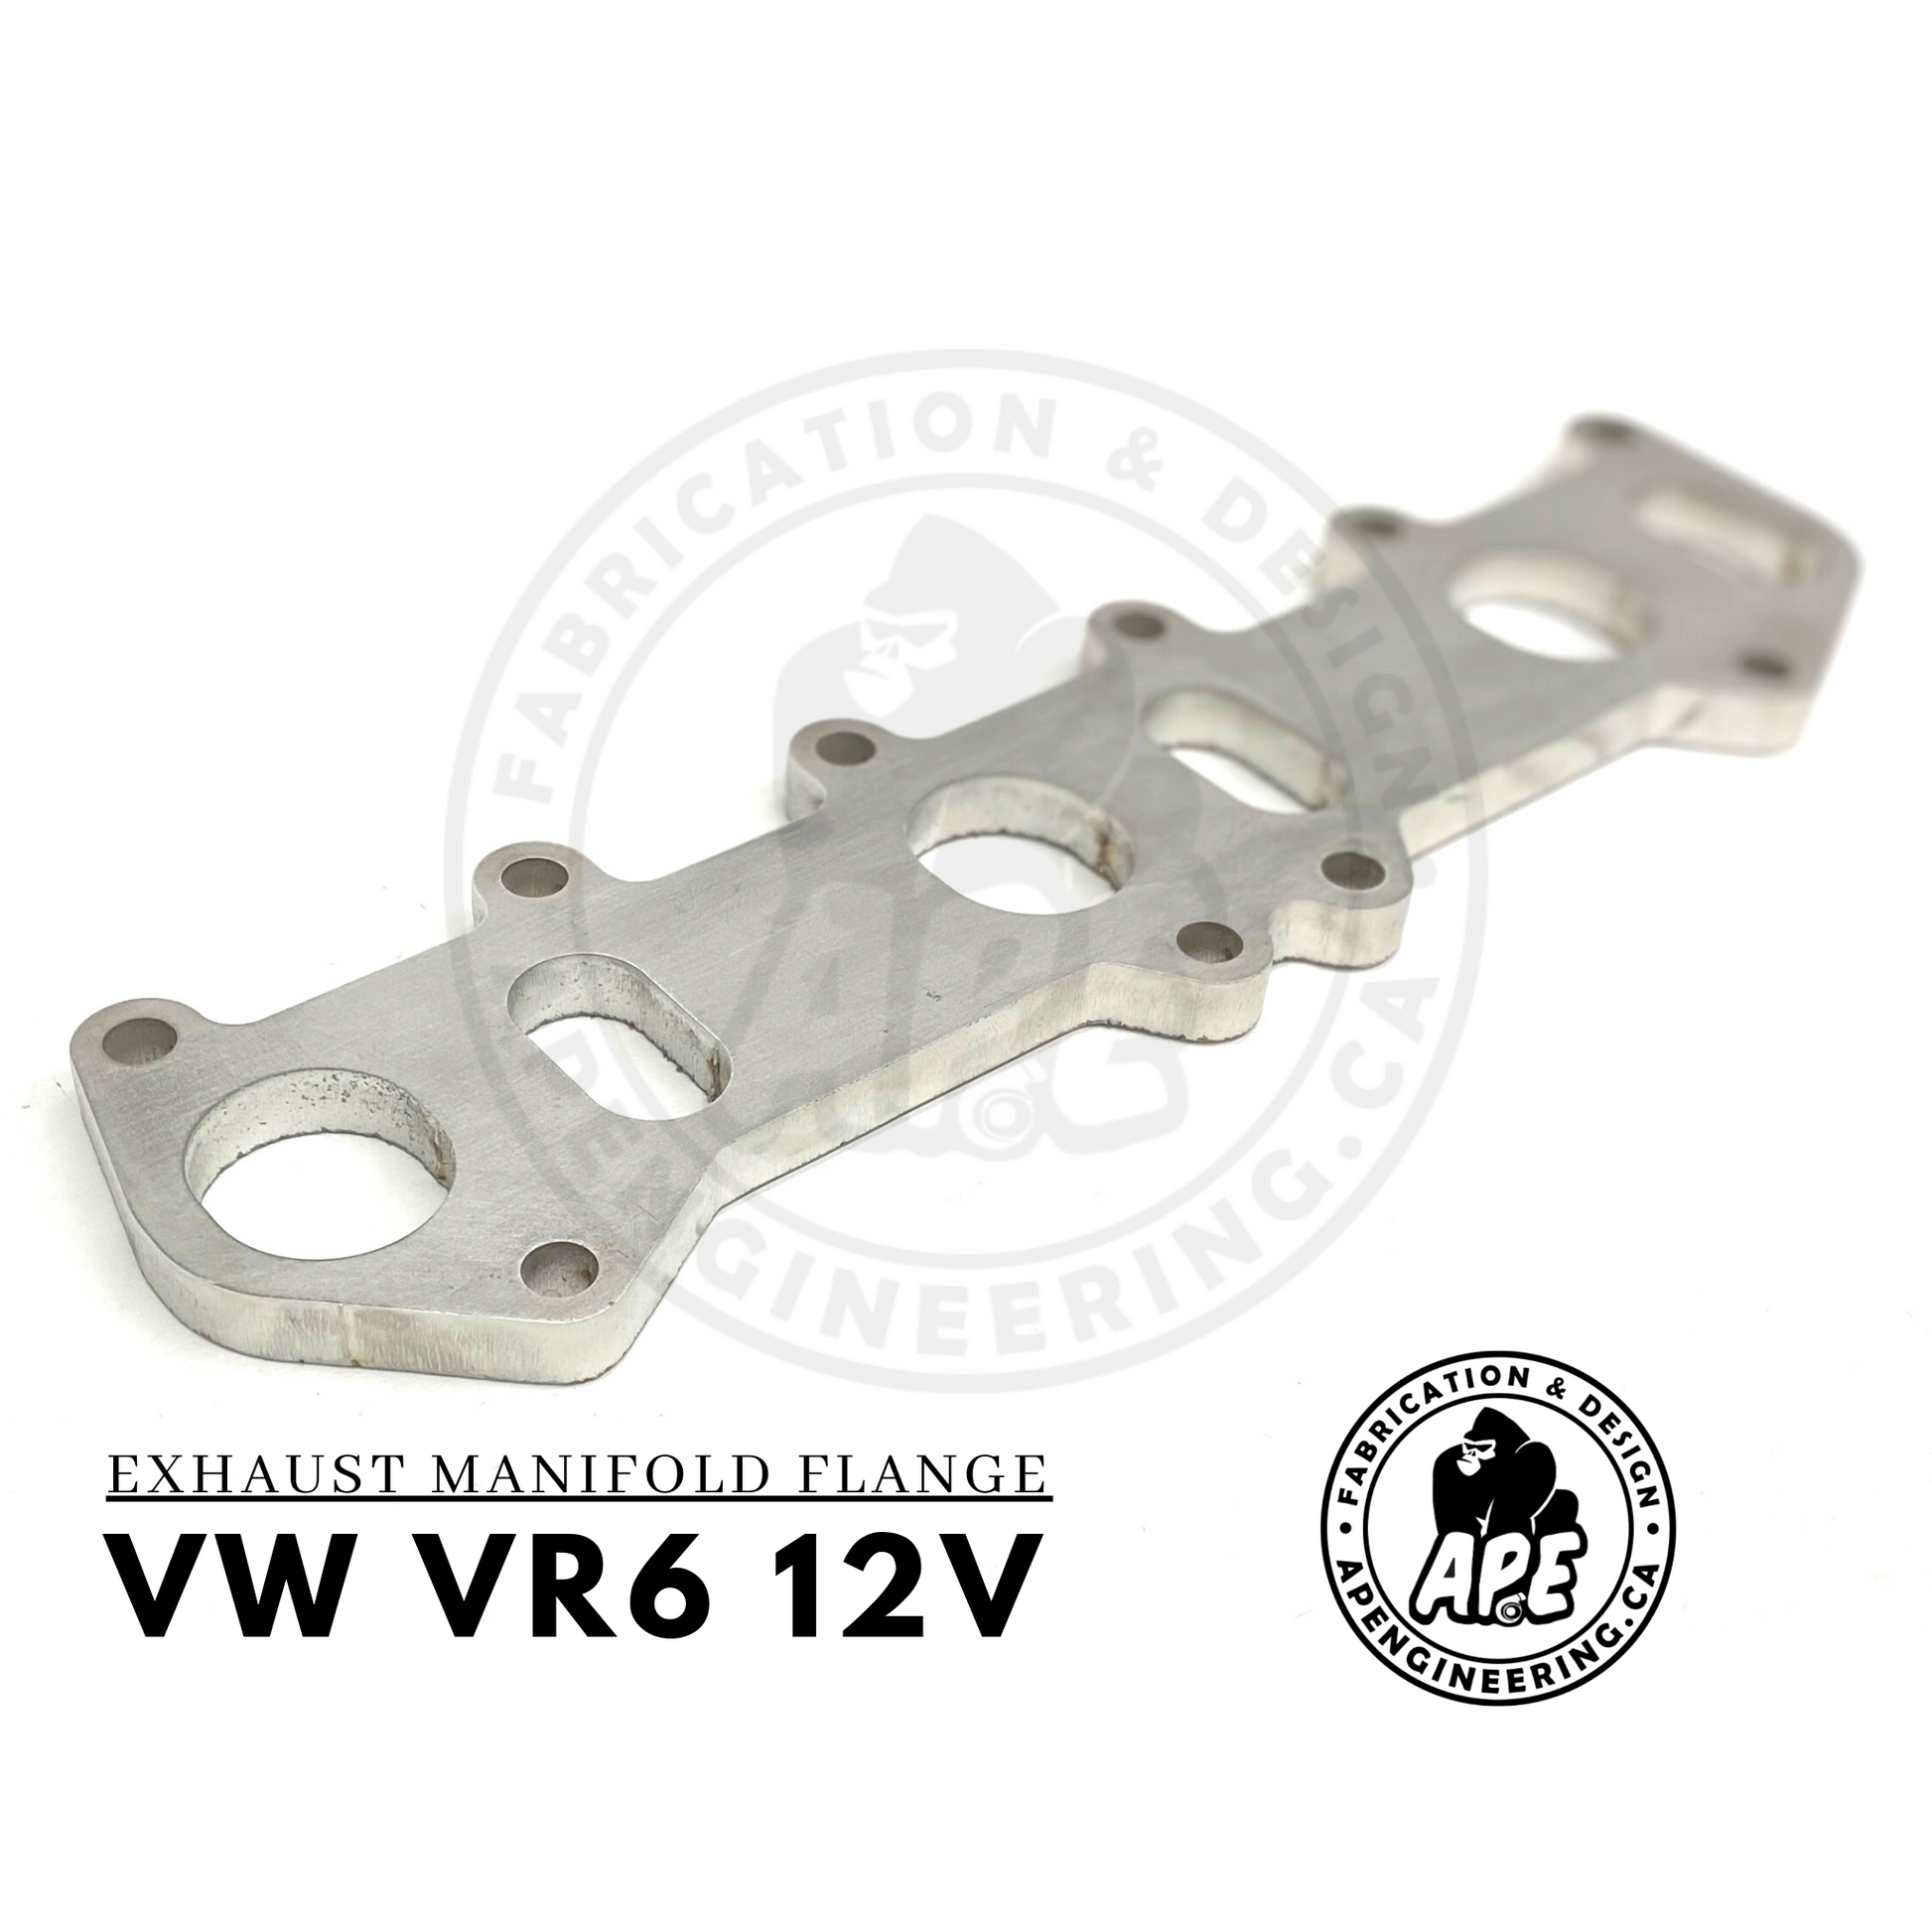 VR6 12v exhaust manifold flange